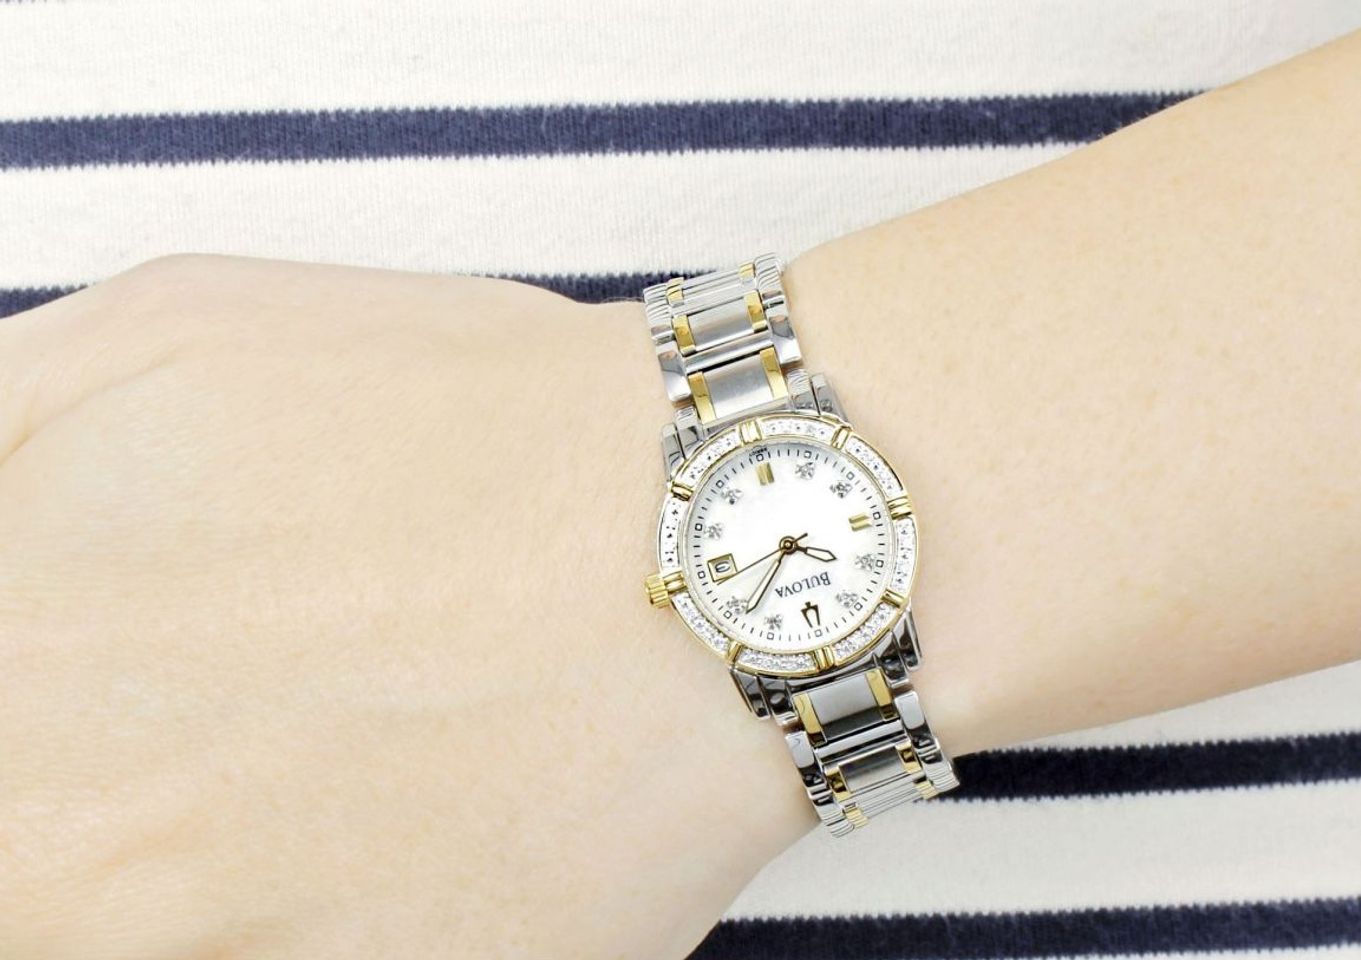 Chiếc đồng hồ Bulova nữ 98R107 trên tay mang sức hút khó cưỡng